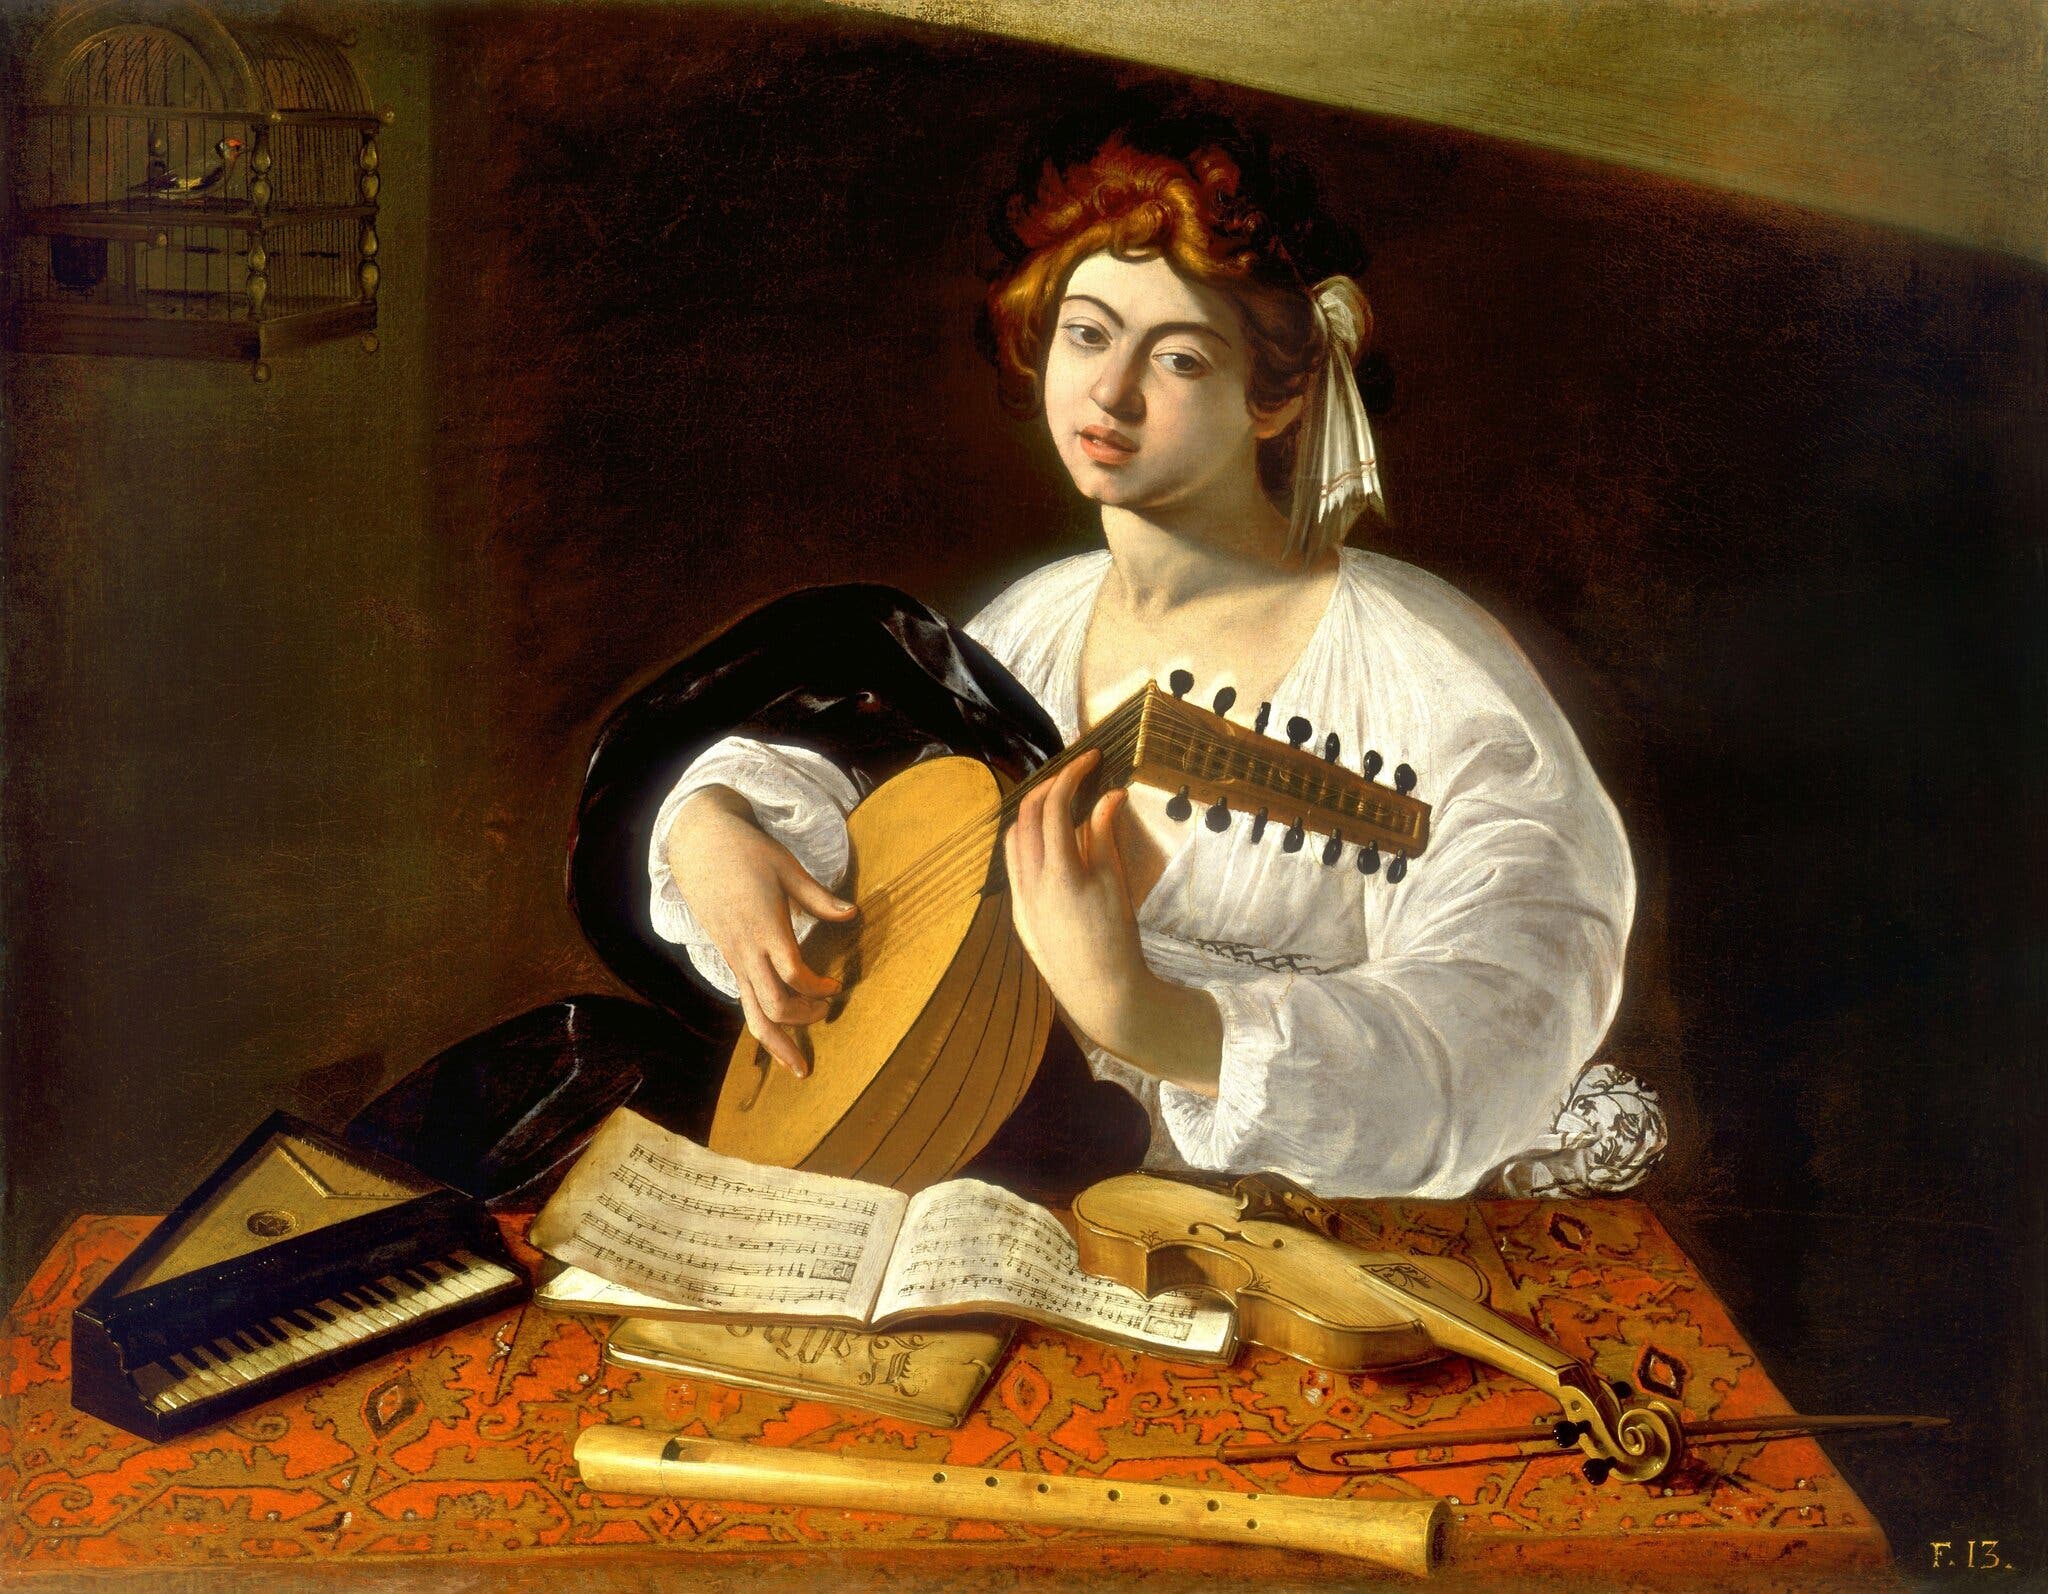 Il suonatore di liuto by Michelangelo Merisi - 1596 circa - 100 cm × 126,5 cm collezione privata